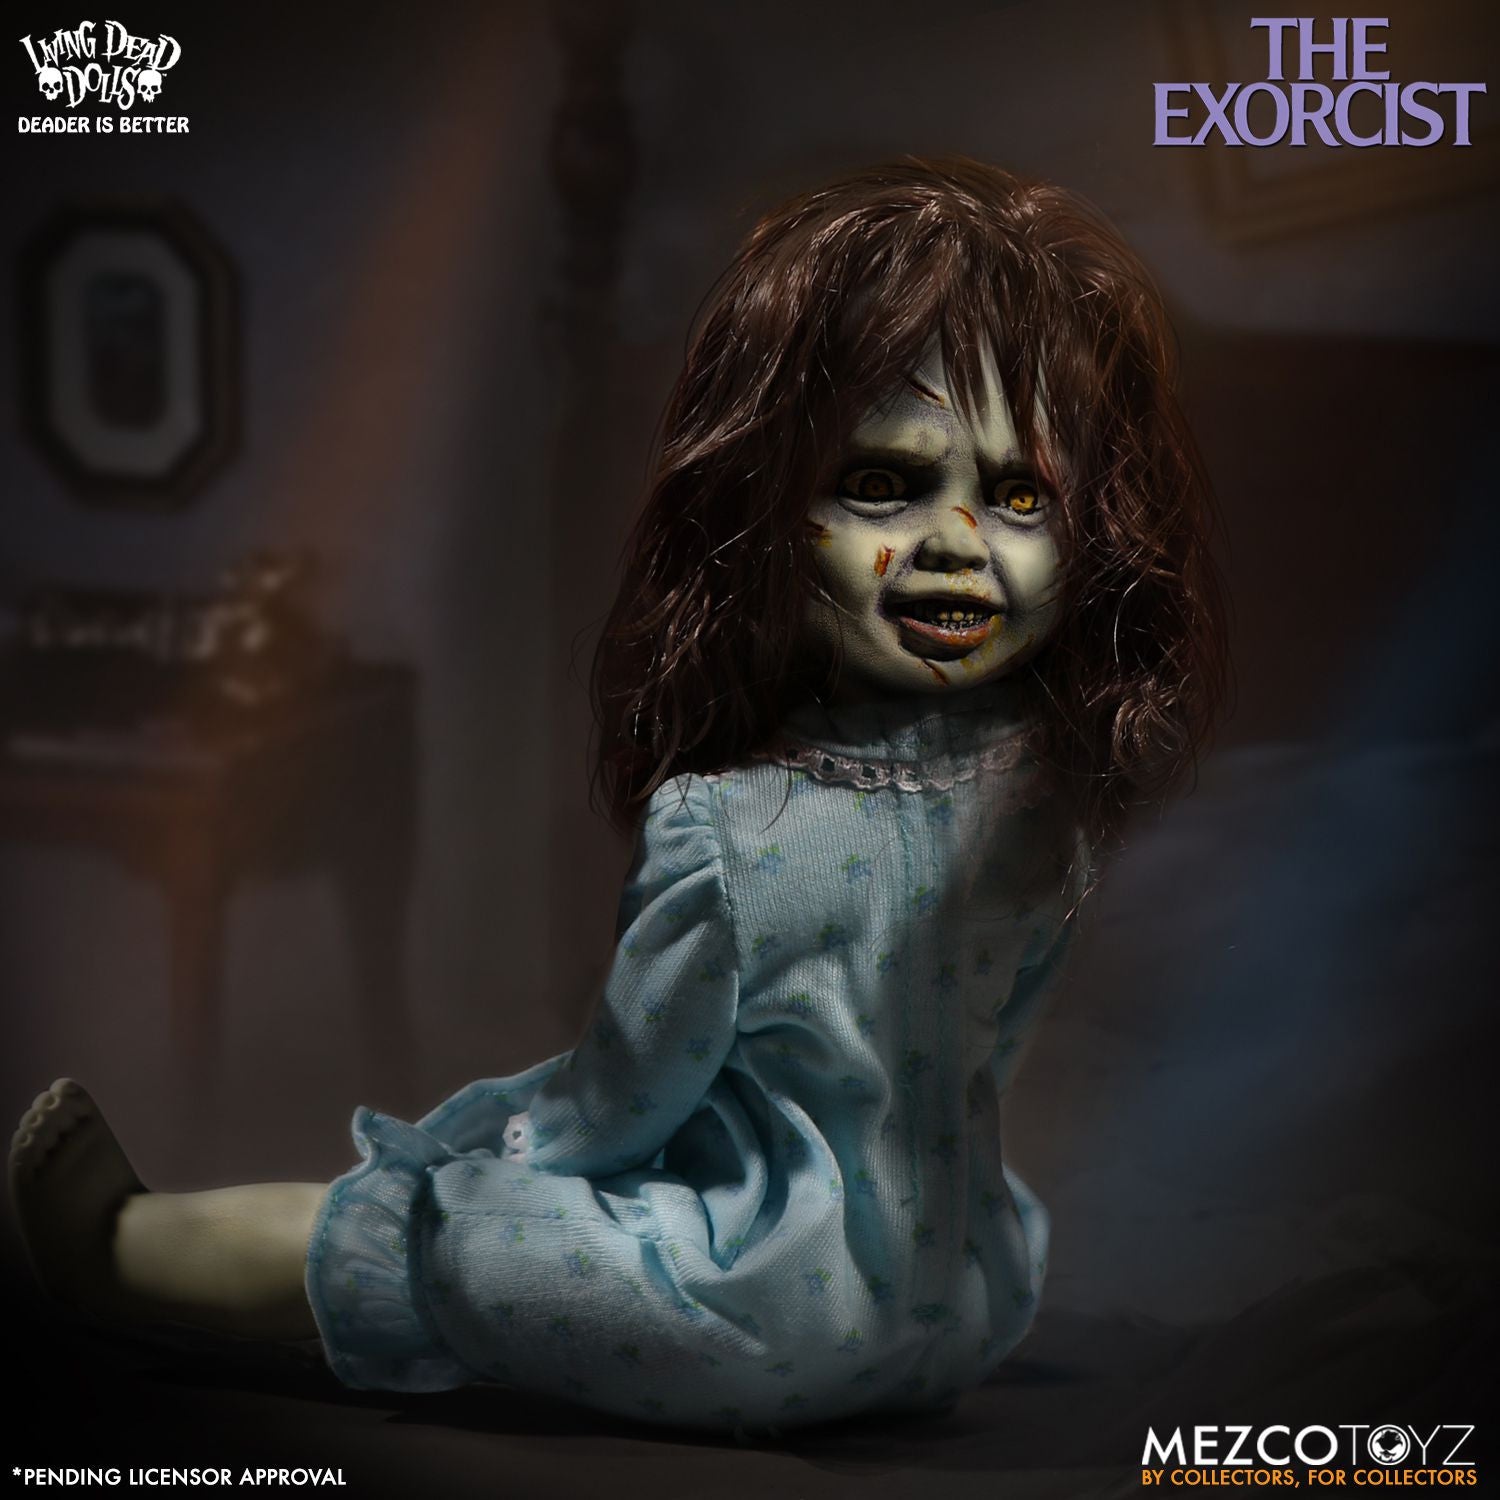 Mezco - Living Dead Dolls - The Exorcist - Marvelous Toys